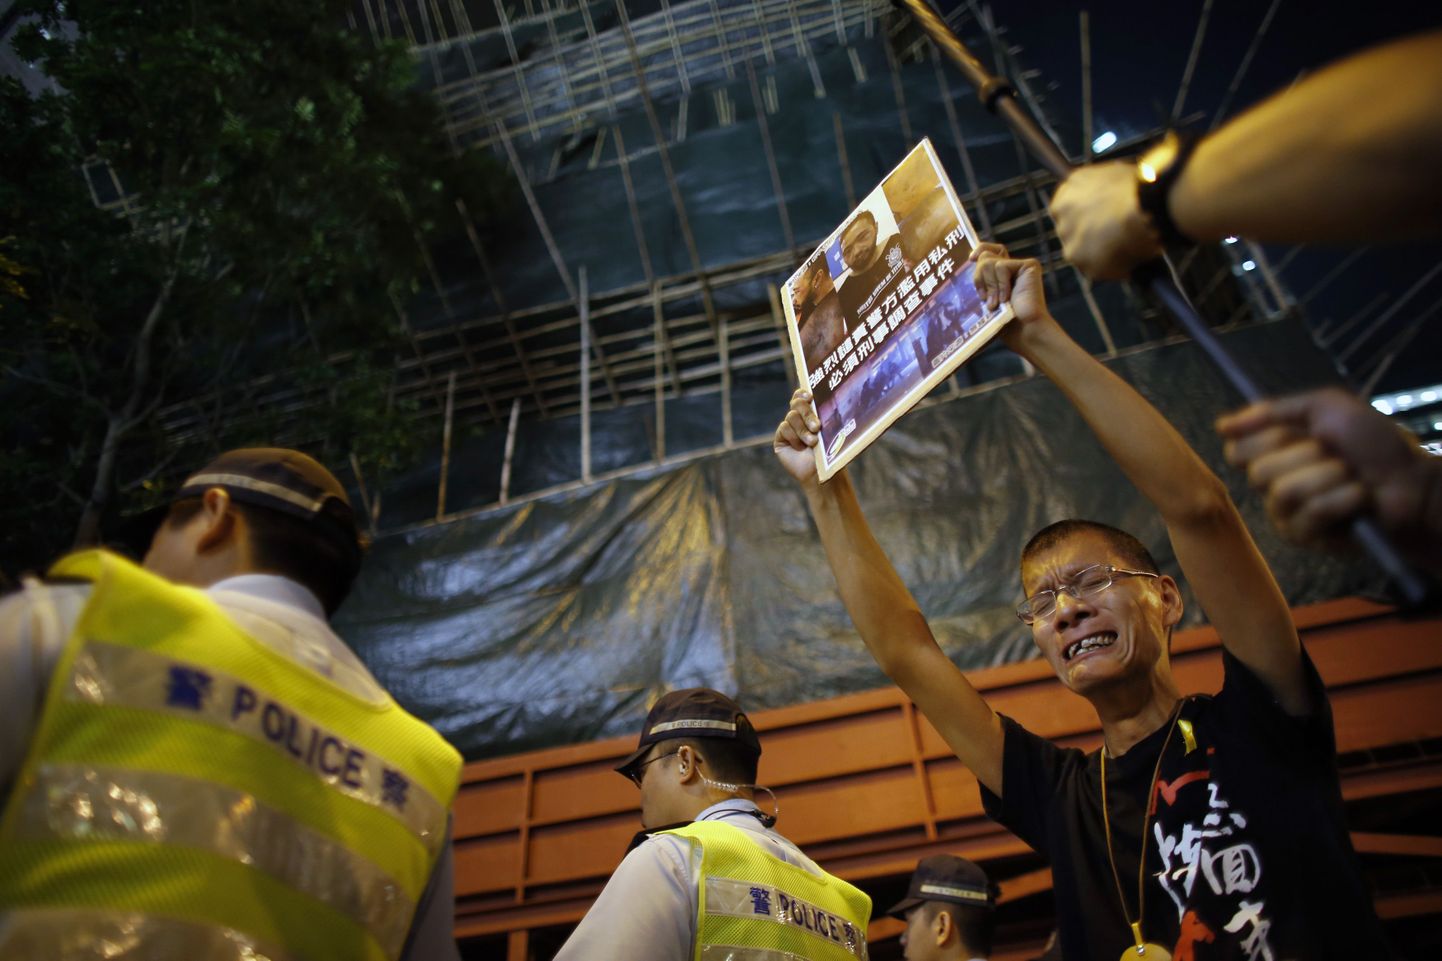 Demokraatiameelsed Hongkongi elanikud nõuavad haiglasse sattunud protestija Ken Tsang Kin-chiu peksmise uurimist. Väidetavalt tegid seda politseinikud.